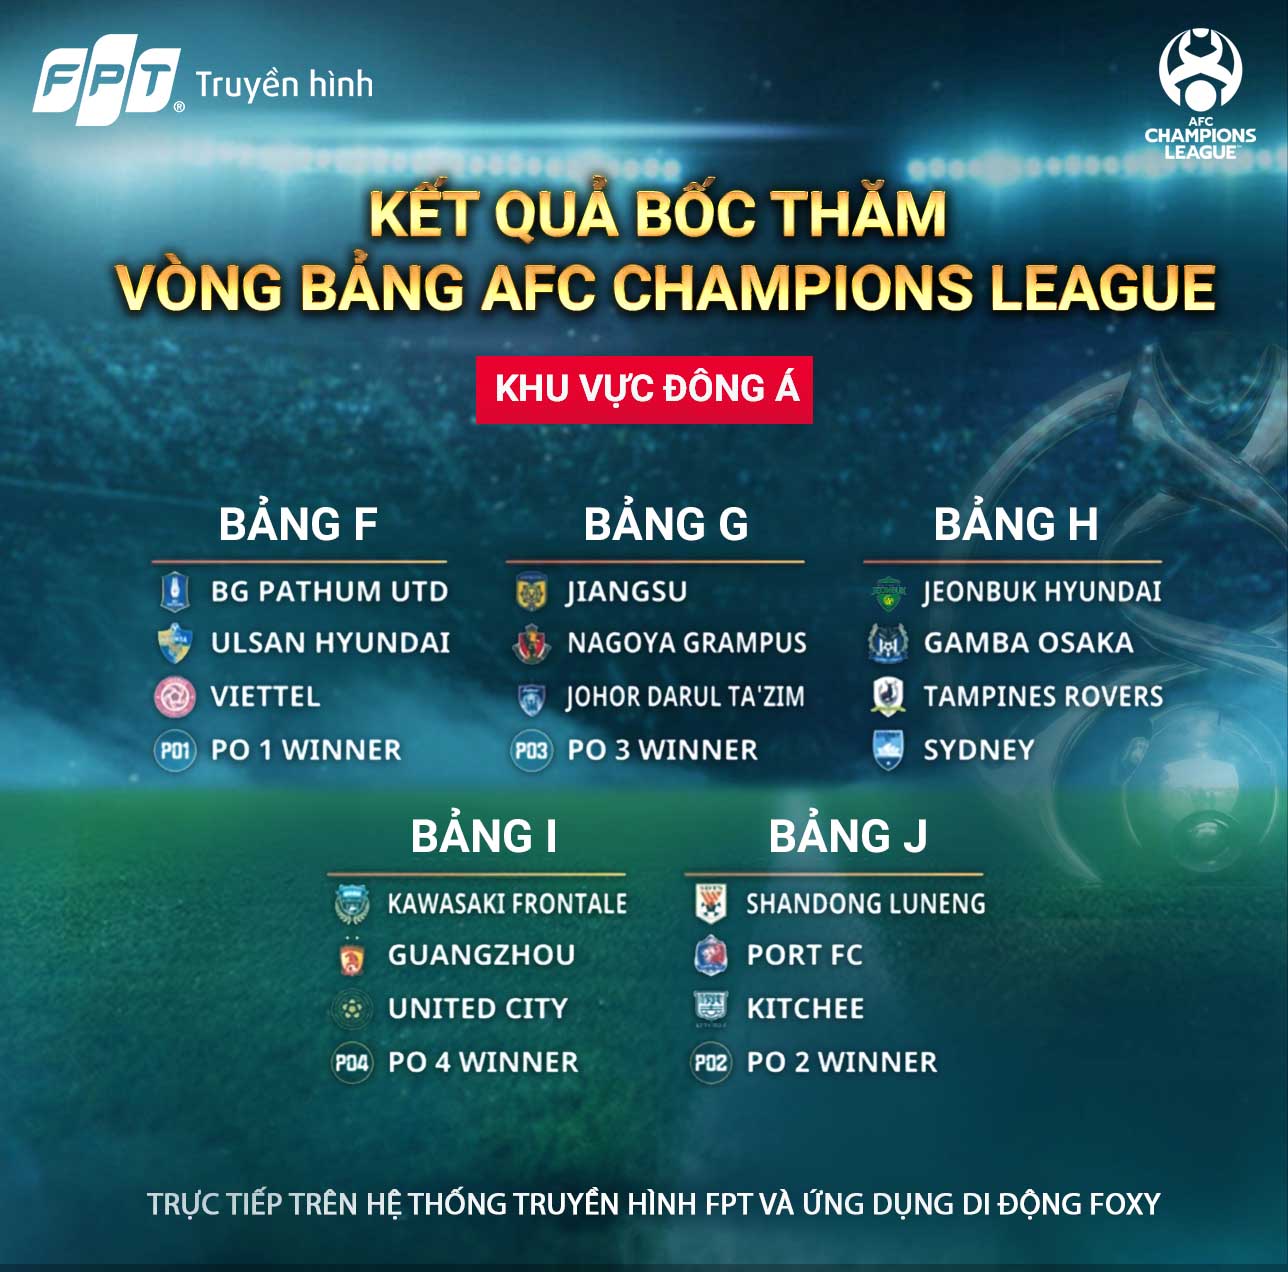 Vòng bảng AFC Champions League và AFC Cup 2021: Viettel gặp đội số 1 Thái Lan, Hà Nội chạm trán nhà ĐKVĐ Indonesia aàc